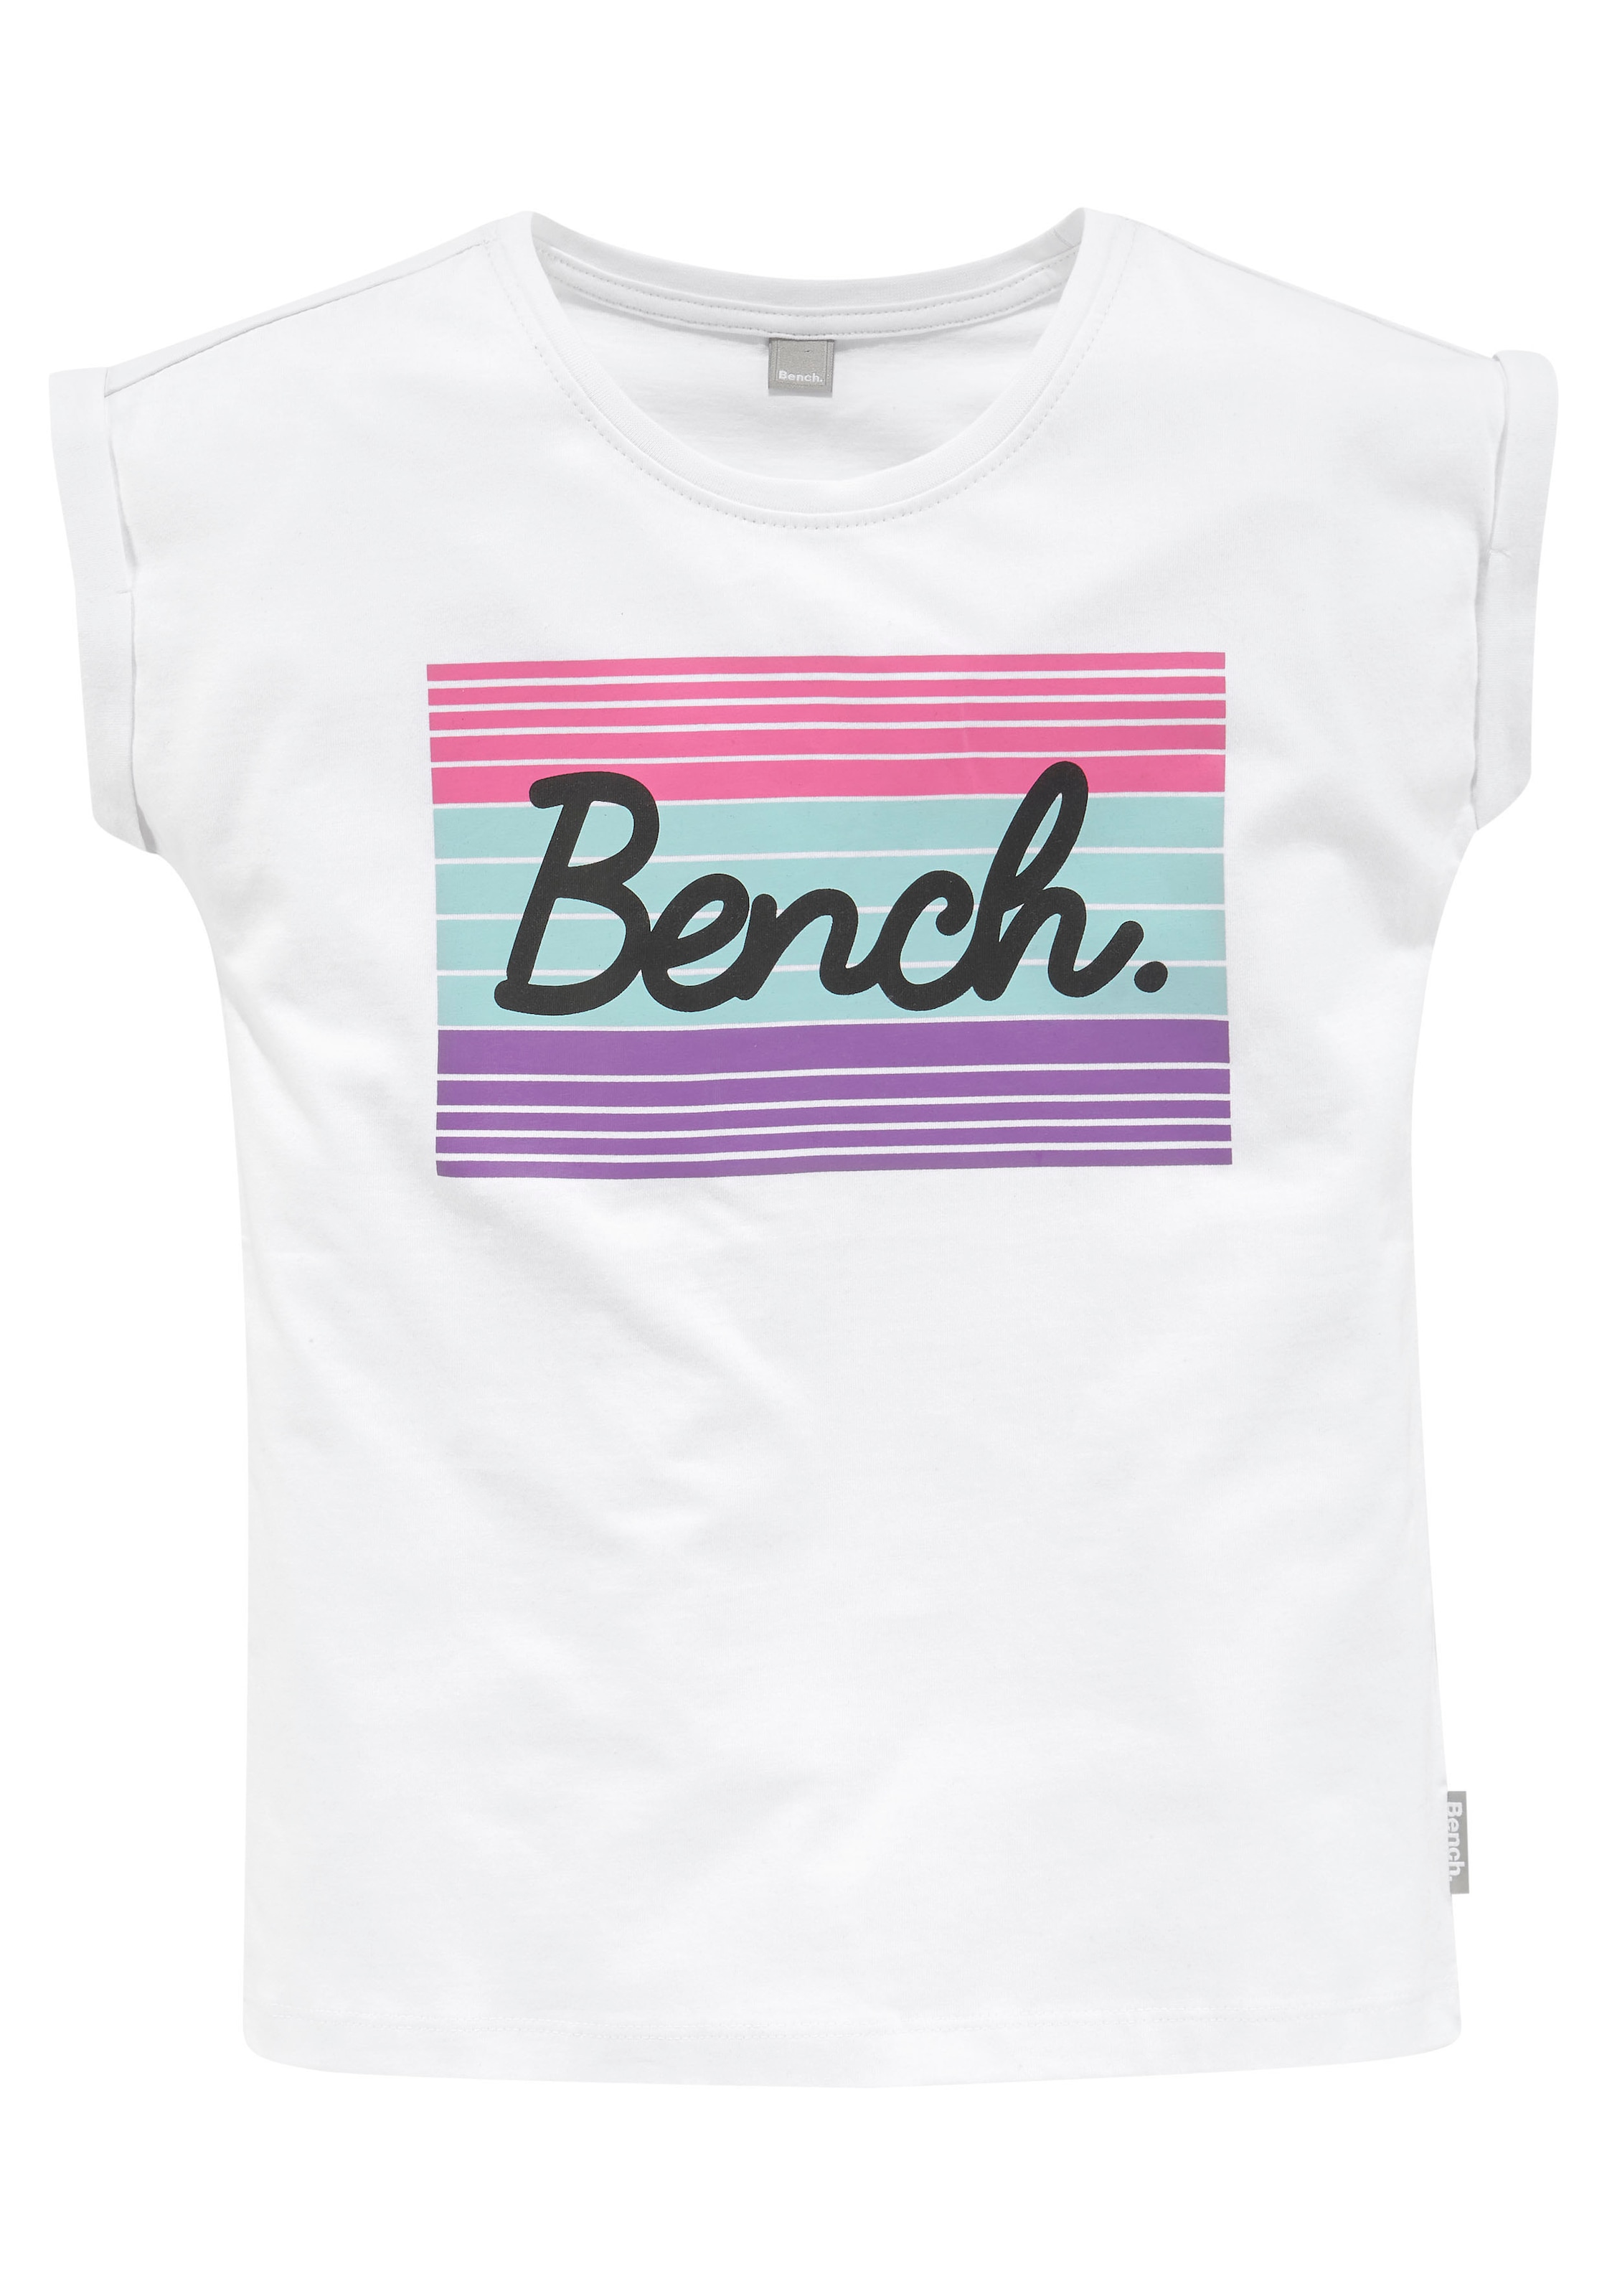 ✌ Bench. en ligne T-Shirt, Logodruck grossem mit Acheter